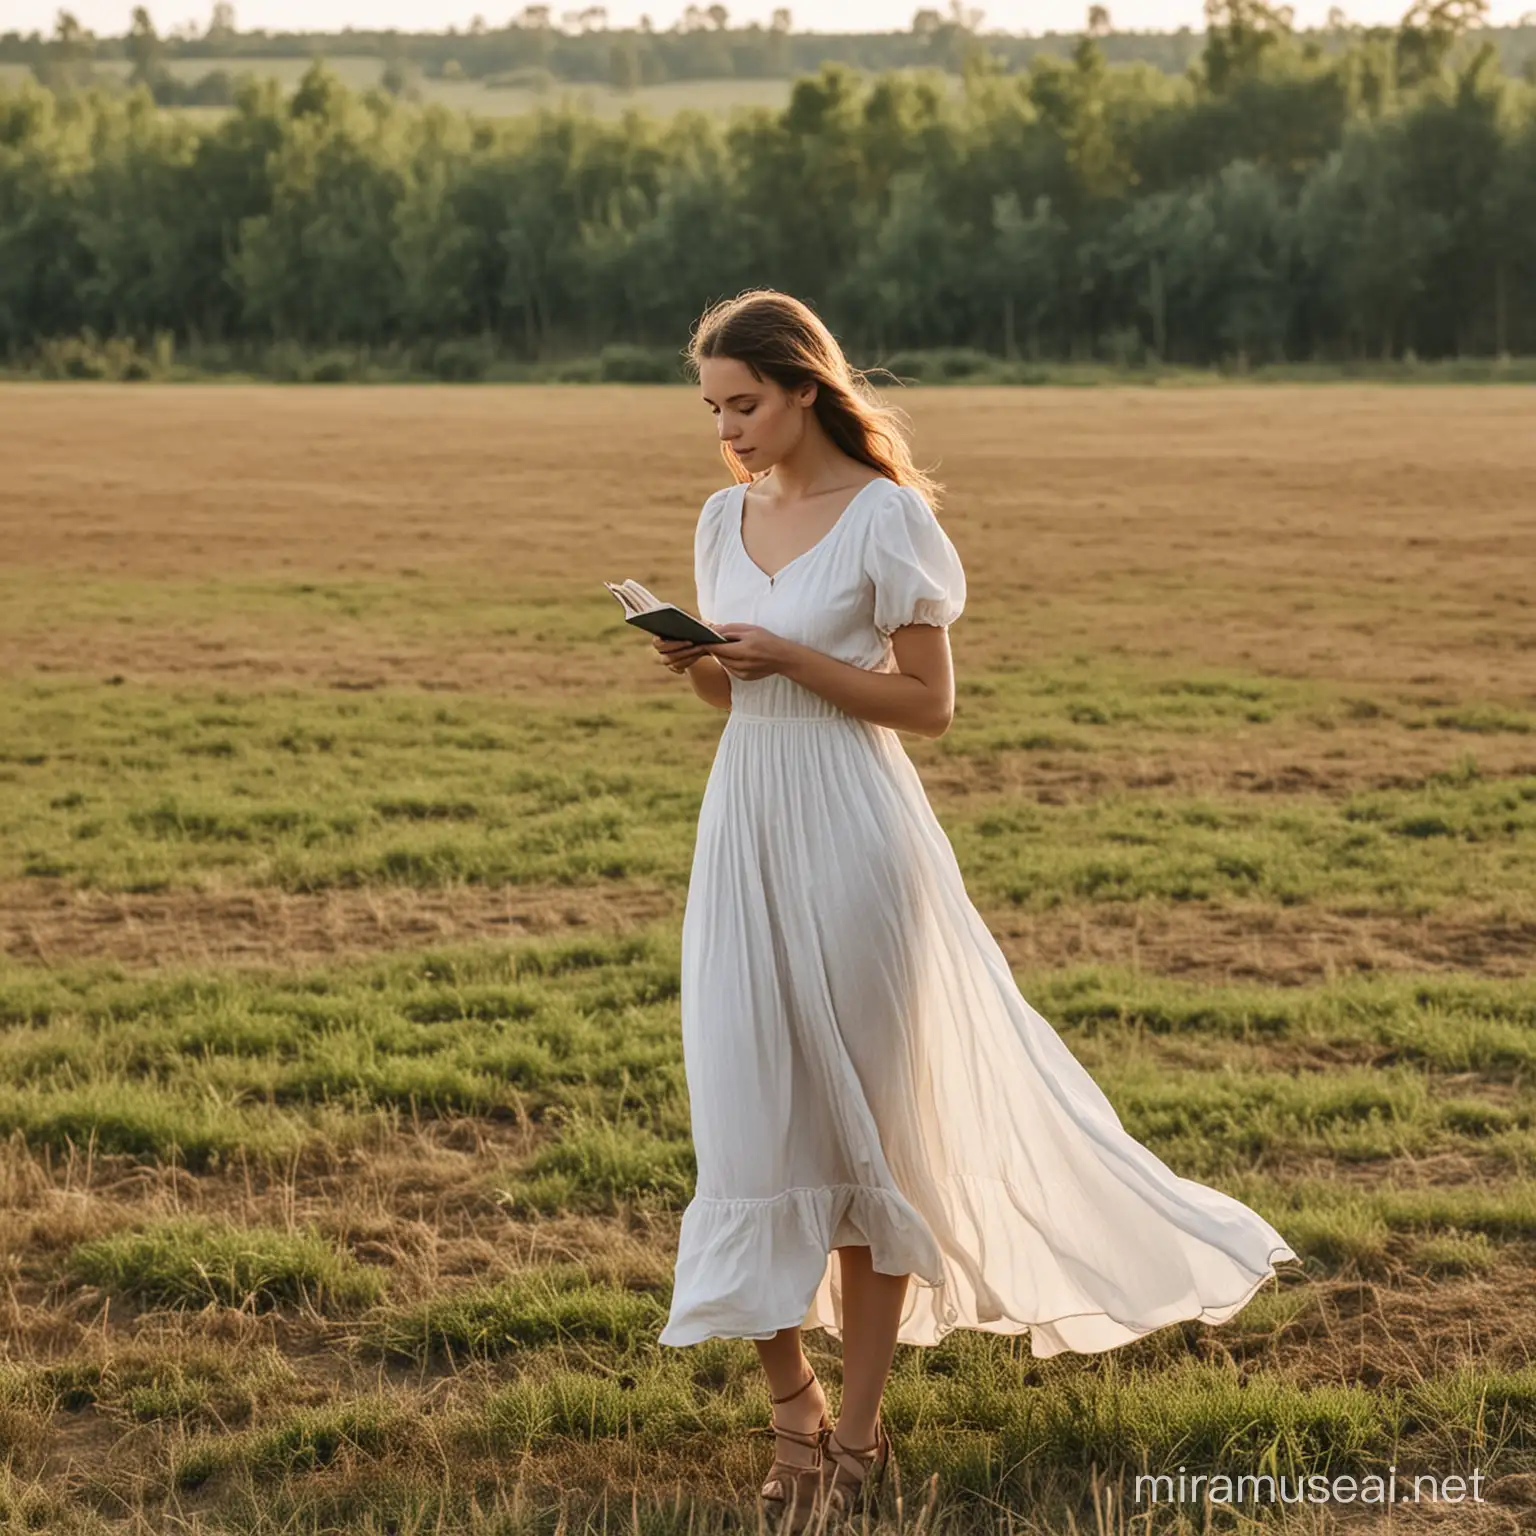 девушка в простом легком платье, работающая на поле